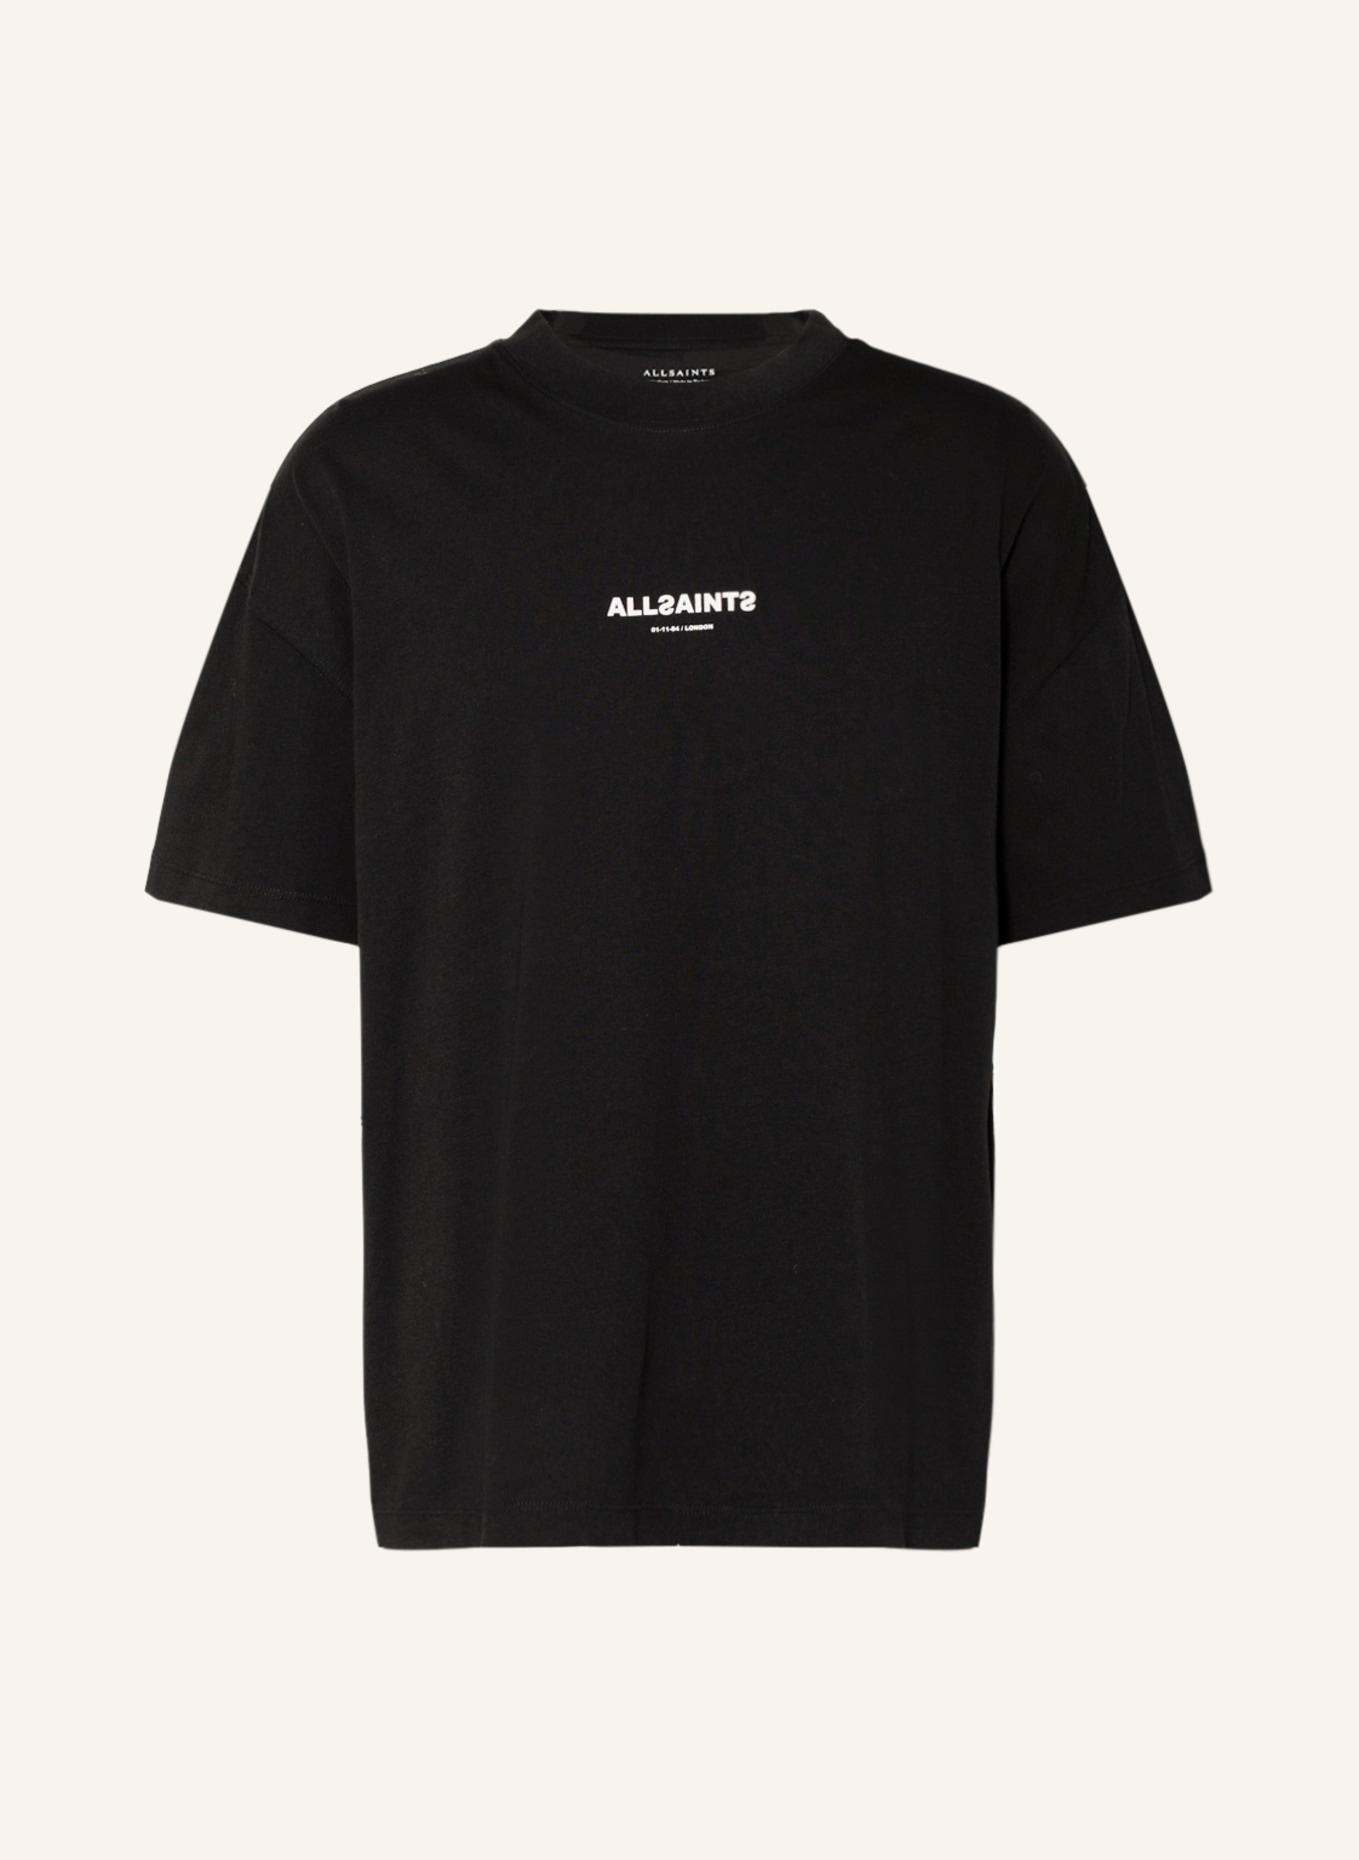 ALLSAINTS T-Shirt SUBVERSE, Farbe: SCHWARZ (Bild 1)